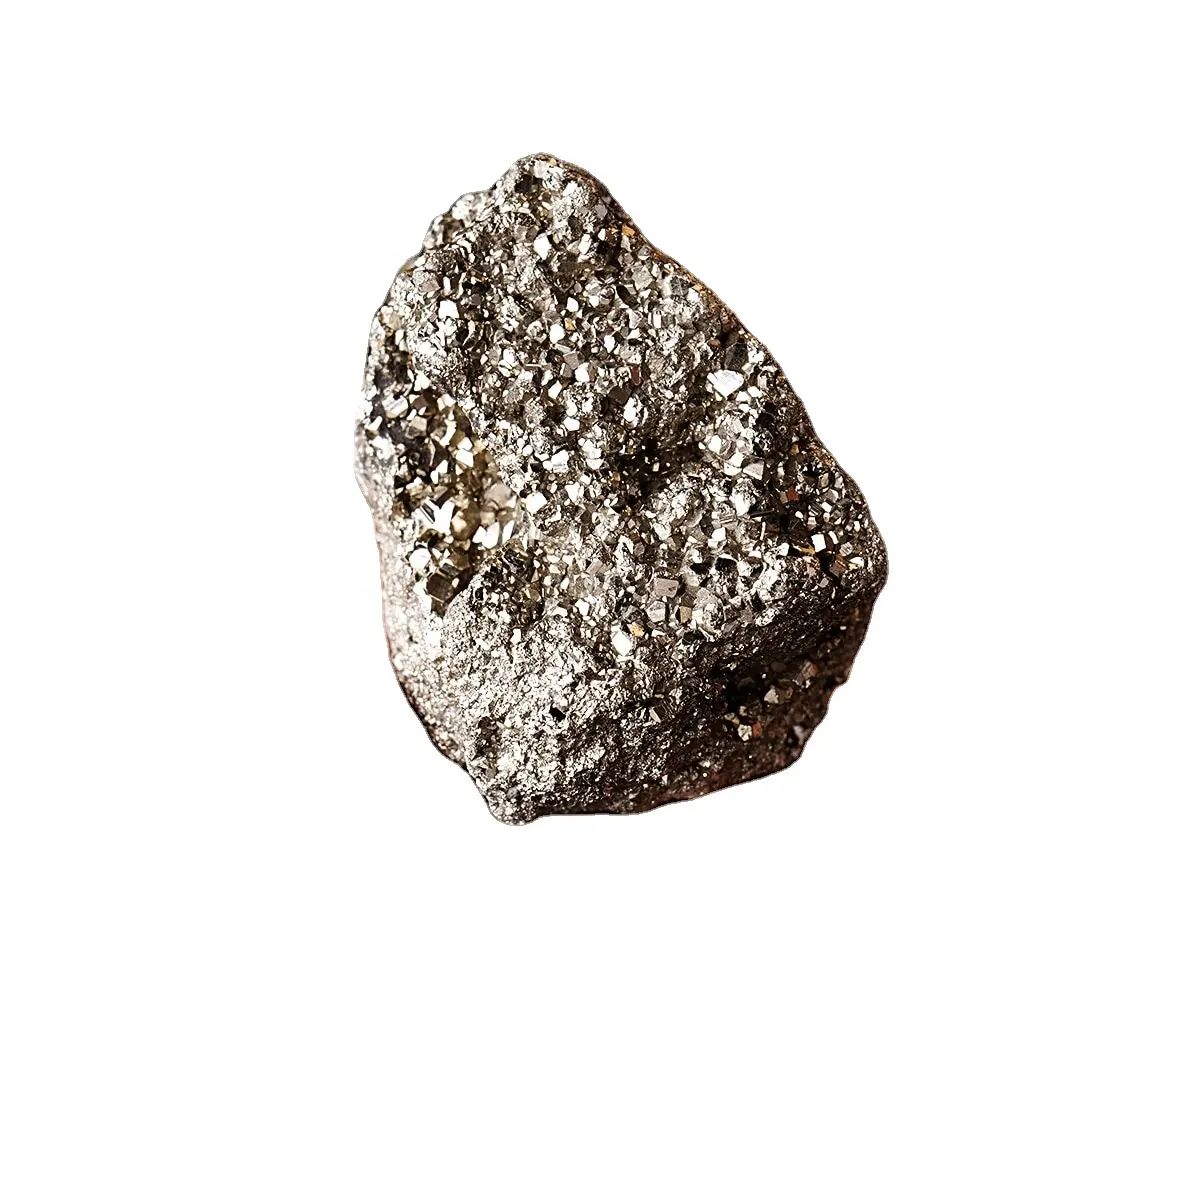 ขายส่งแร่ทองแดงหยาบธรรมชาติตัวอย่างแร่หินไพไรต์ดิบแร่ chalcopyrite คุณภาพดีที่สุด